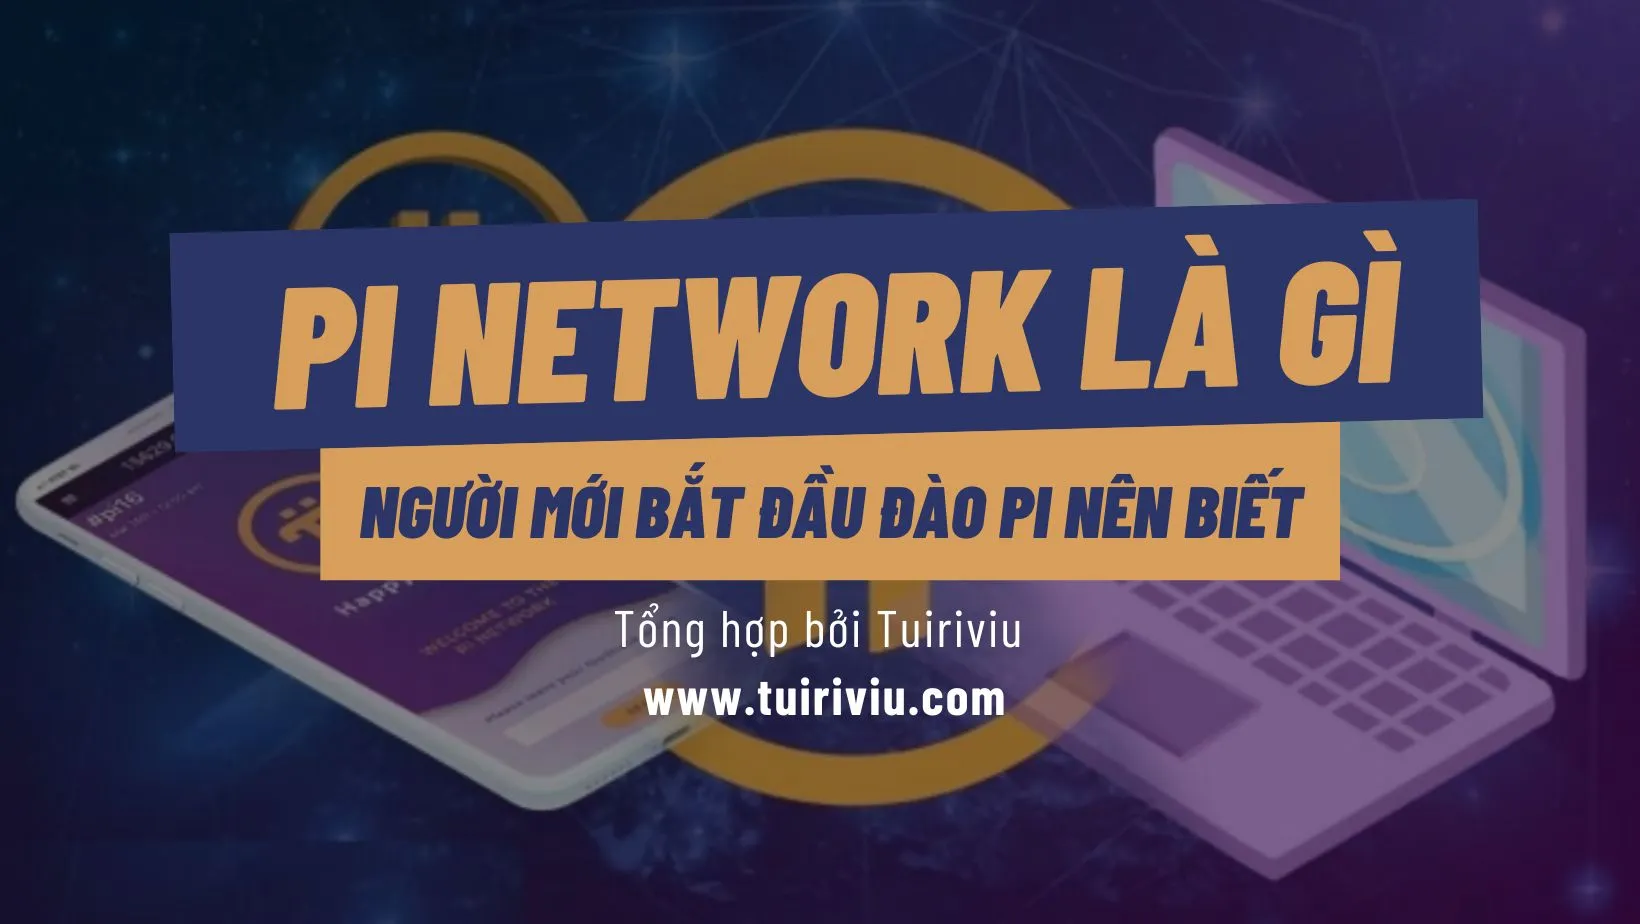 Pi network là gì tuiriviu